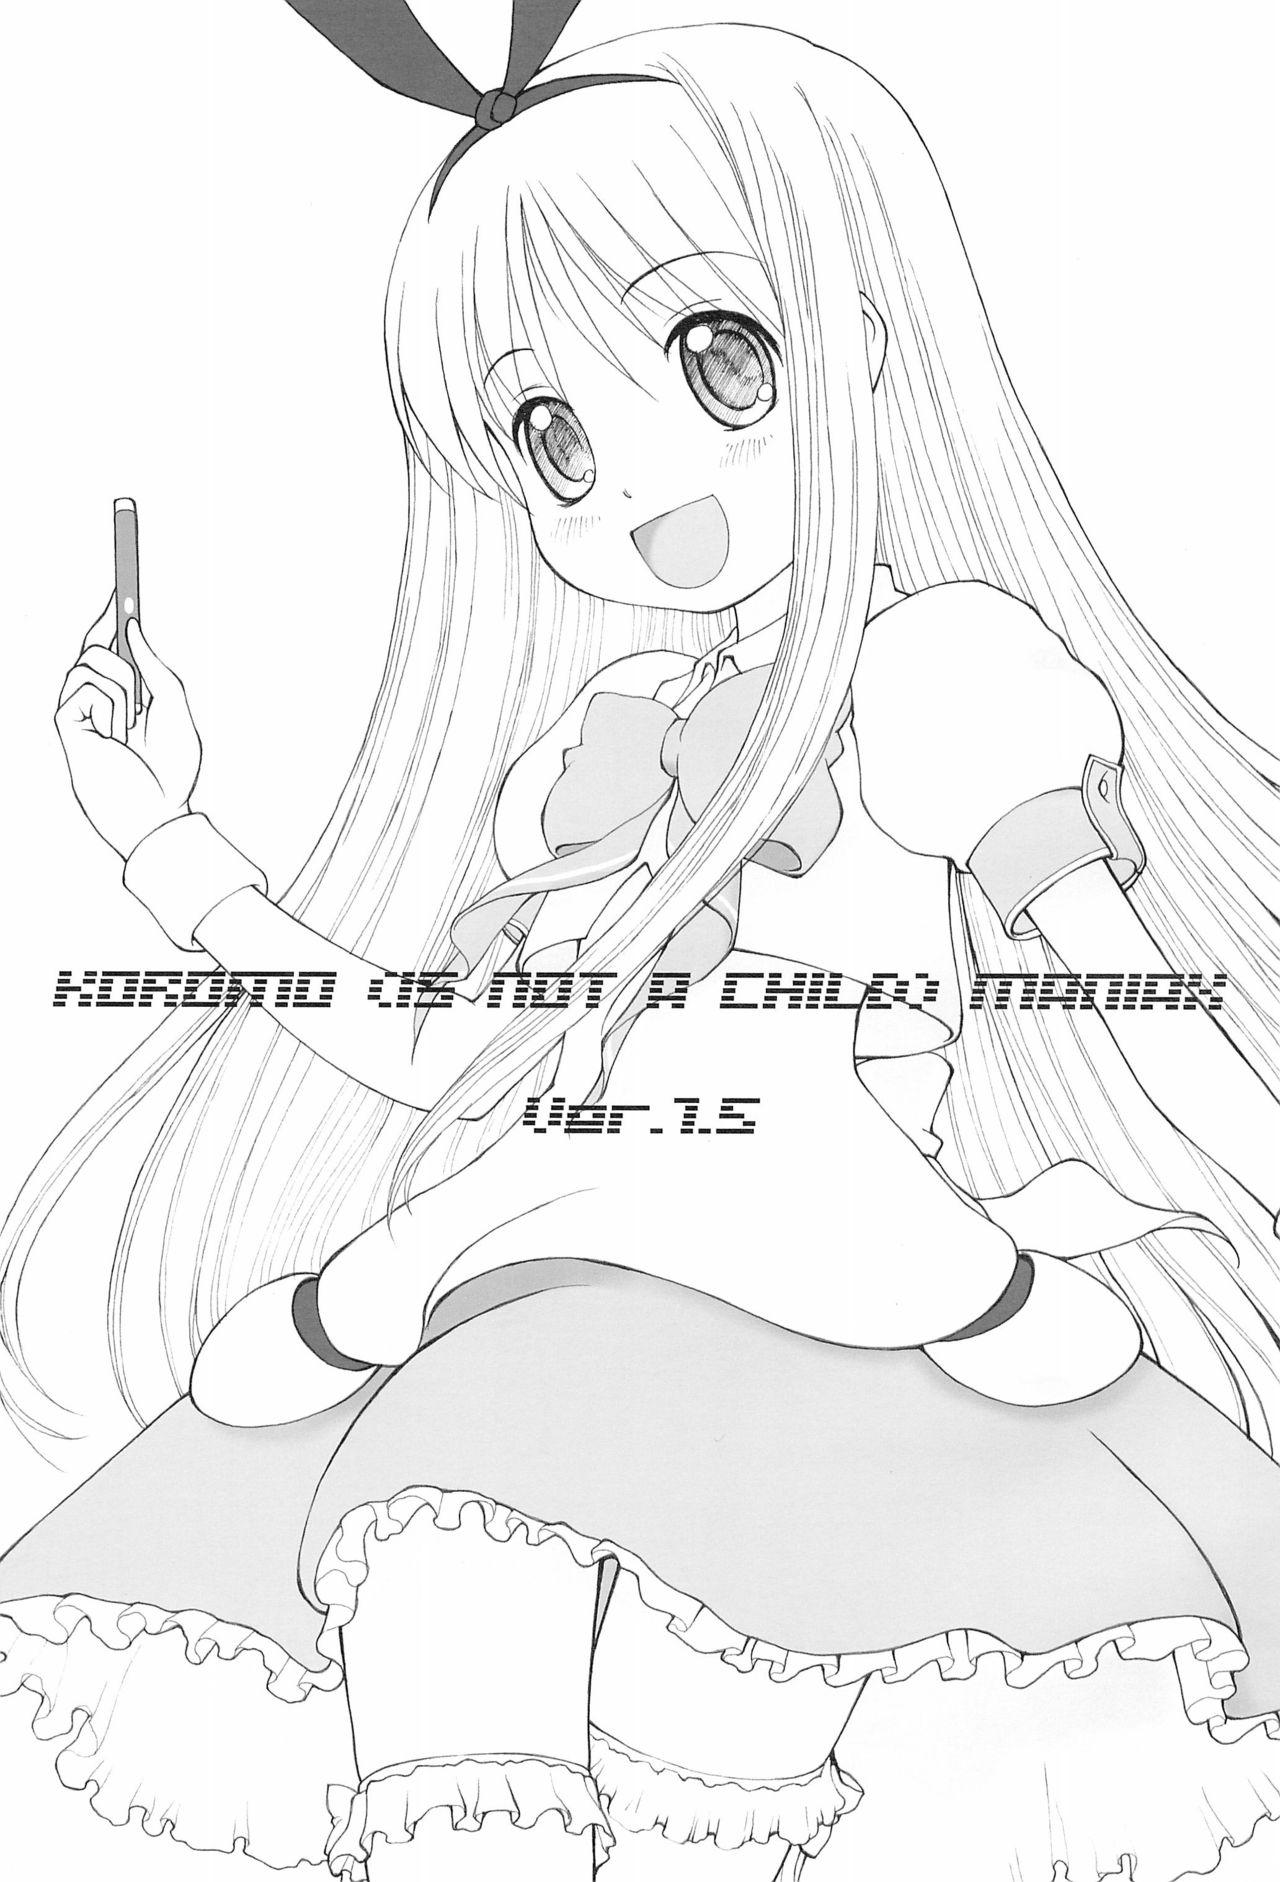 Smoking (C78) [Fujinomiya Millenium (Velfro)] KOROMO (IS NOT A CHILD) MANIAX Ver1.5 (Saki) - Saki Glamcore - Page 3